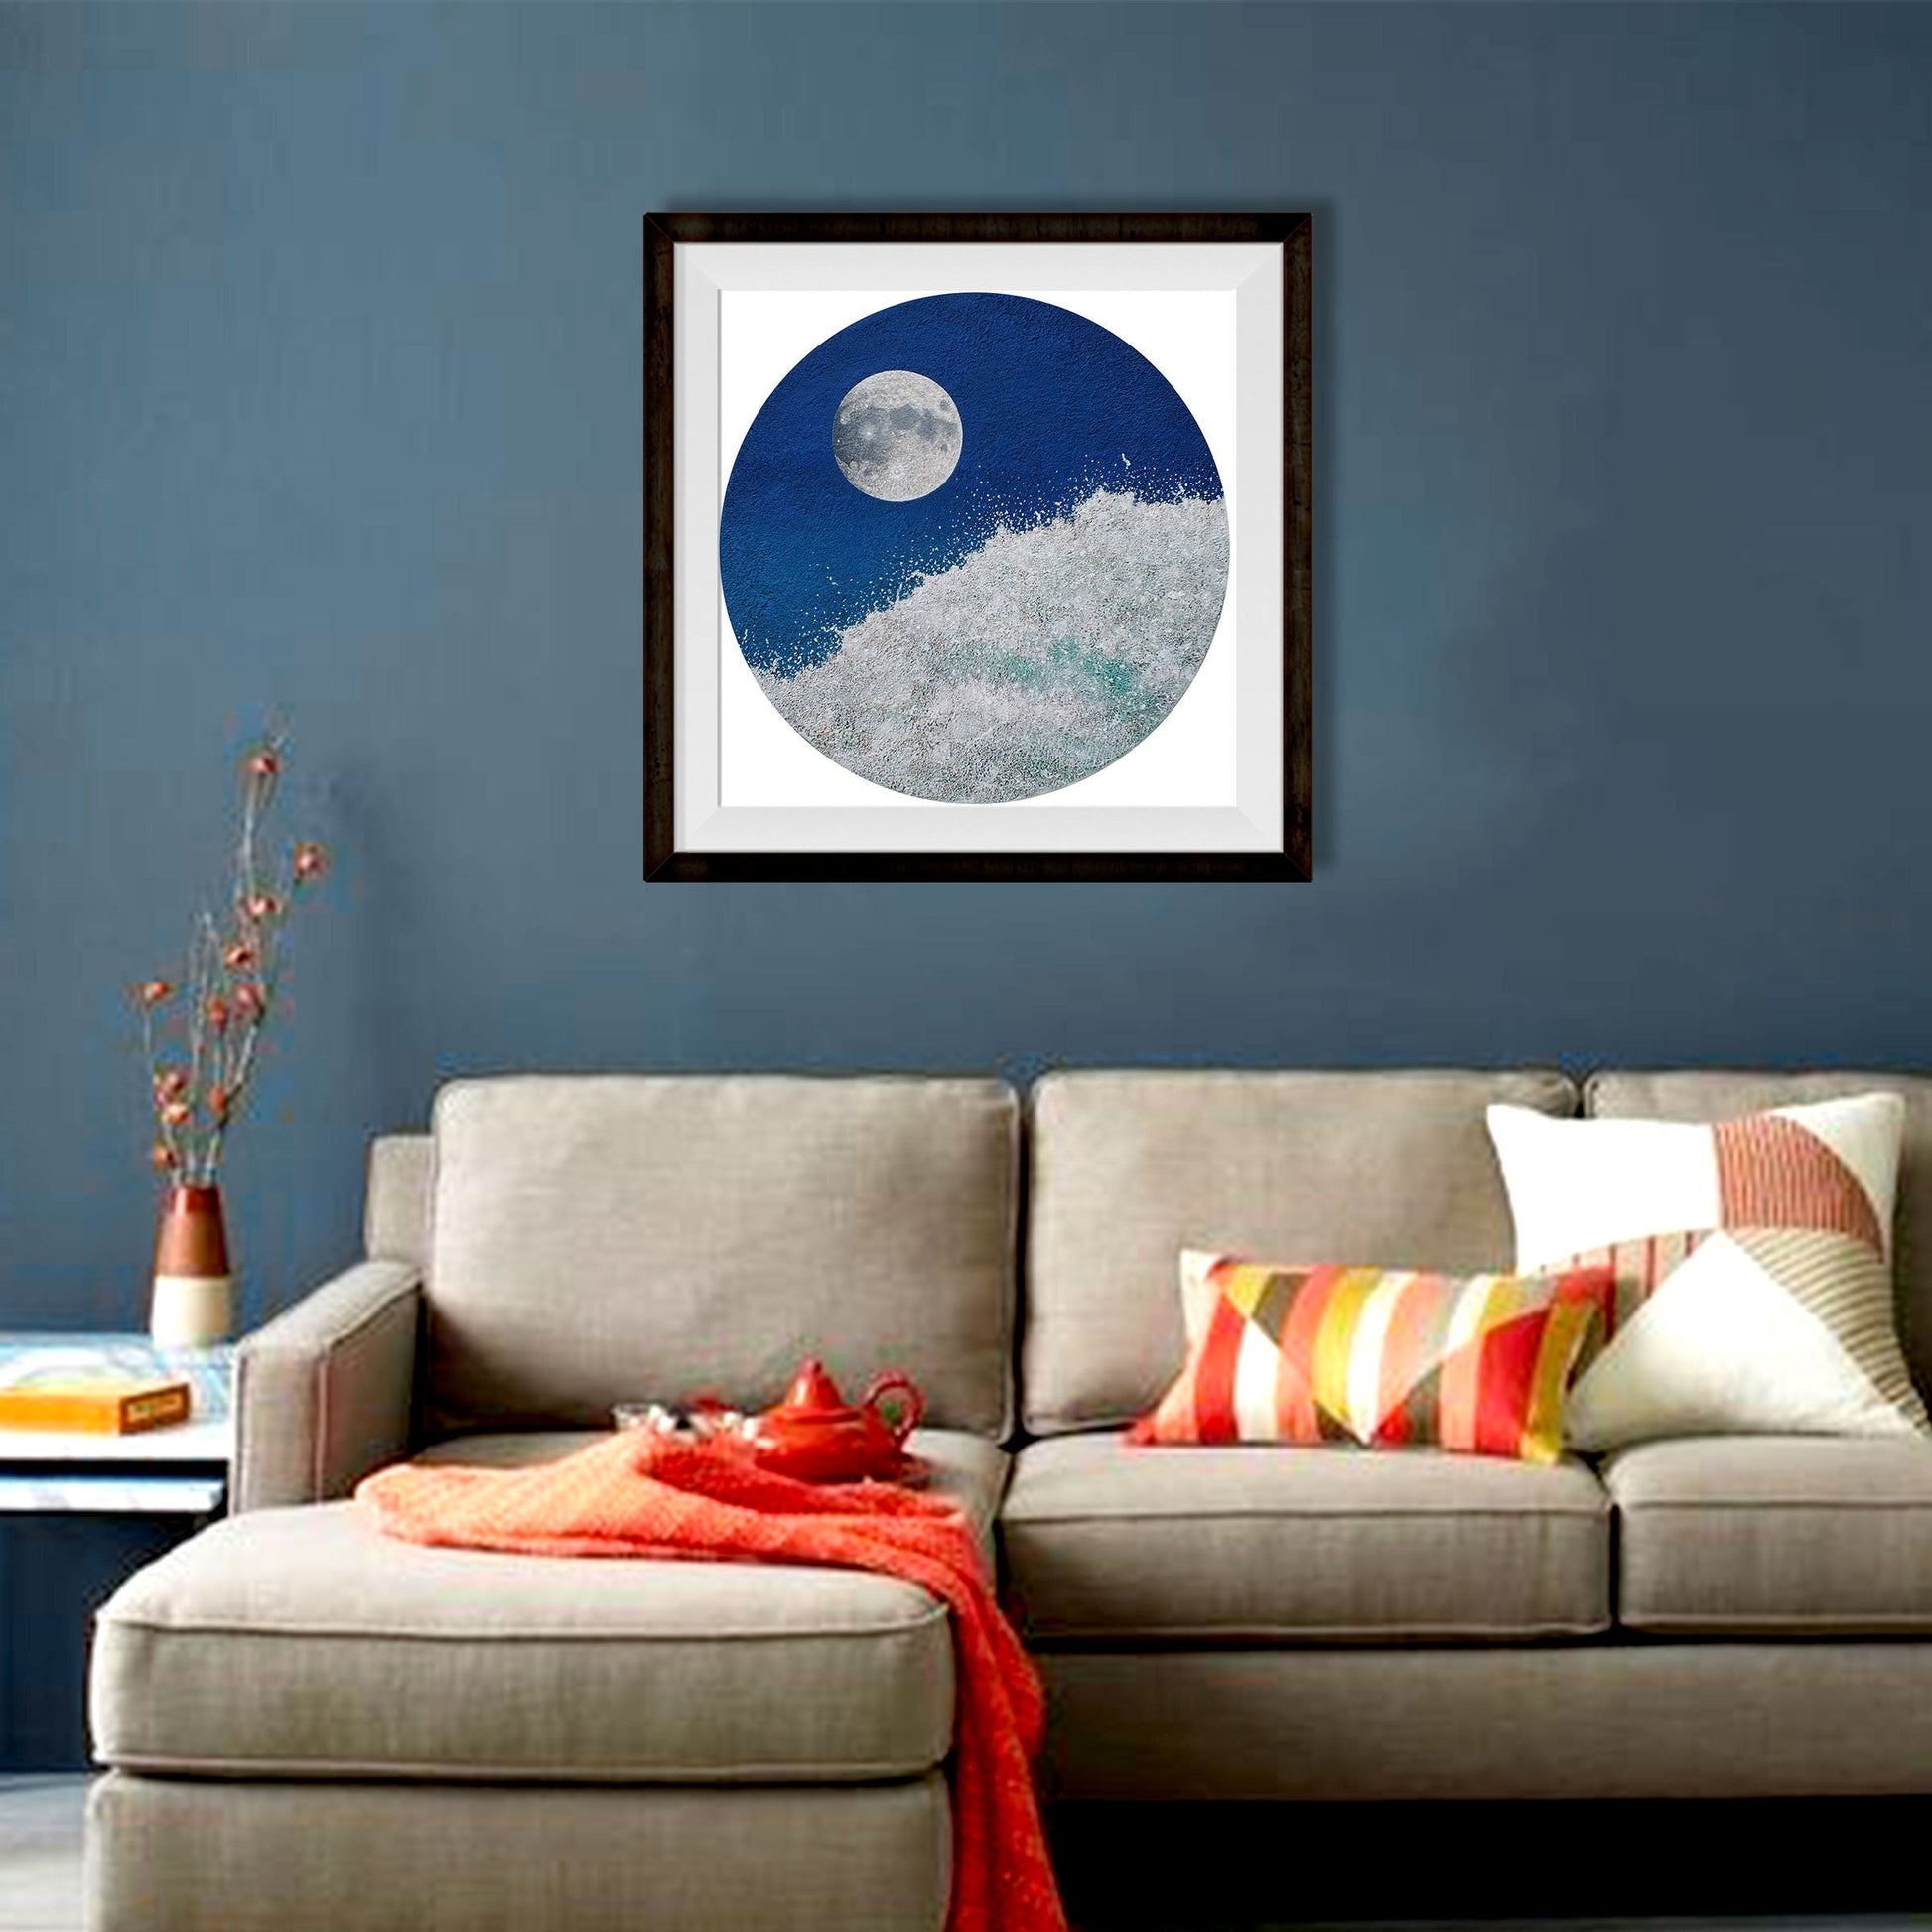 Sea And Moon 2 Painting - Meri Deewar - MeriDeewar